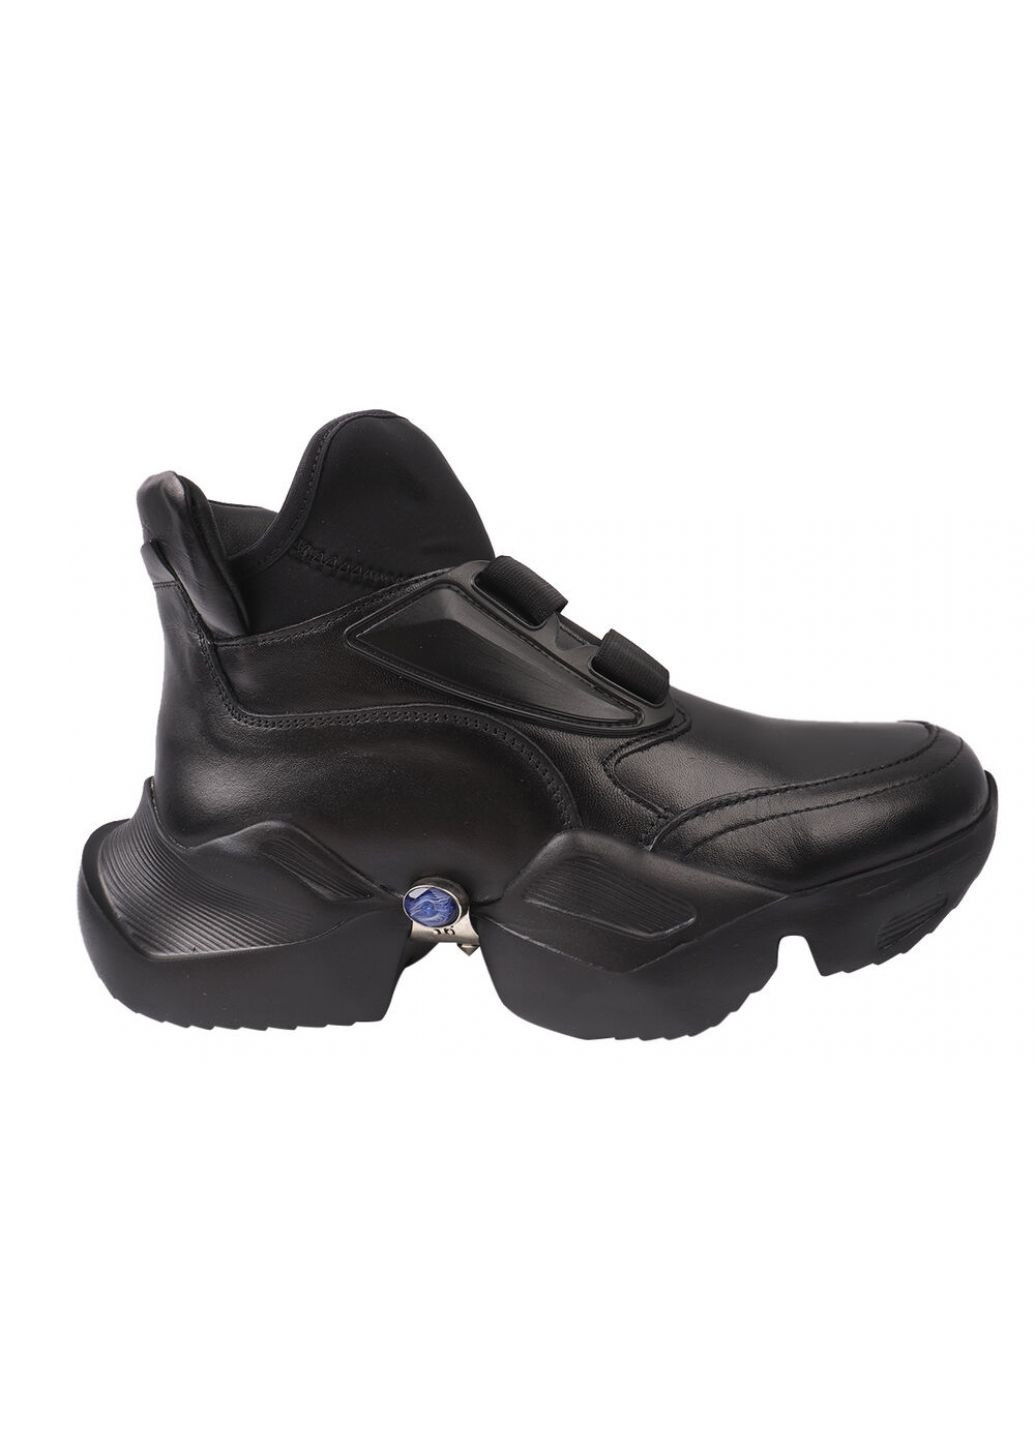 Чорні кросівки жіночі натуральна шкіра, колір чорний Molly Bessa 236-20DK